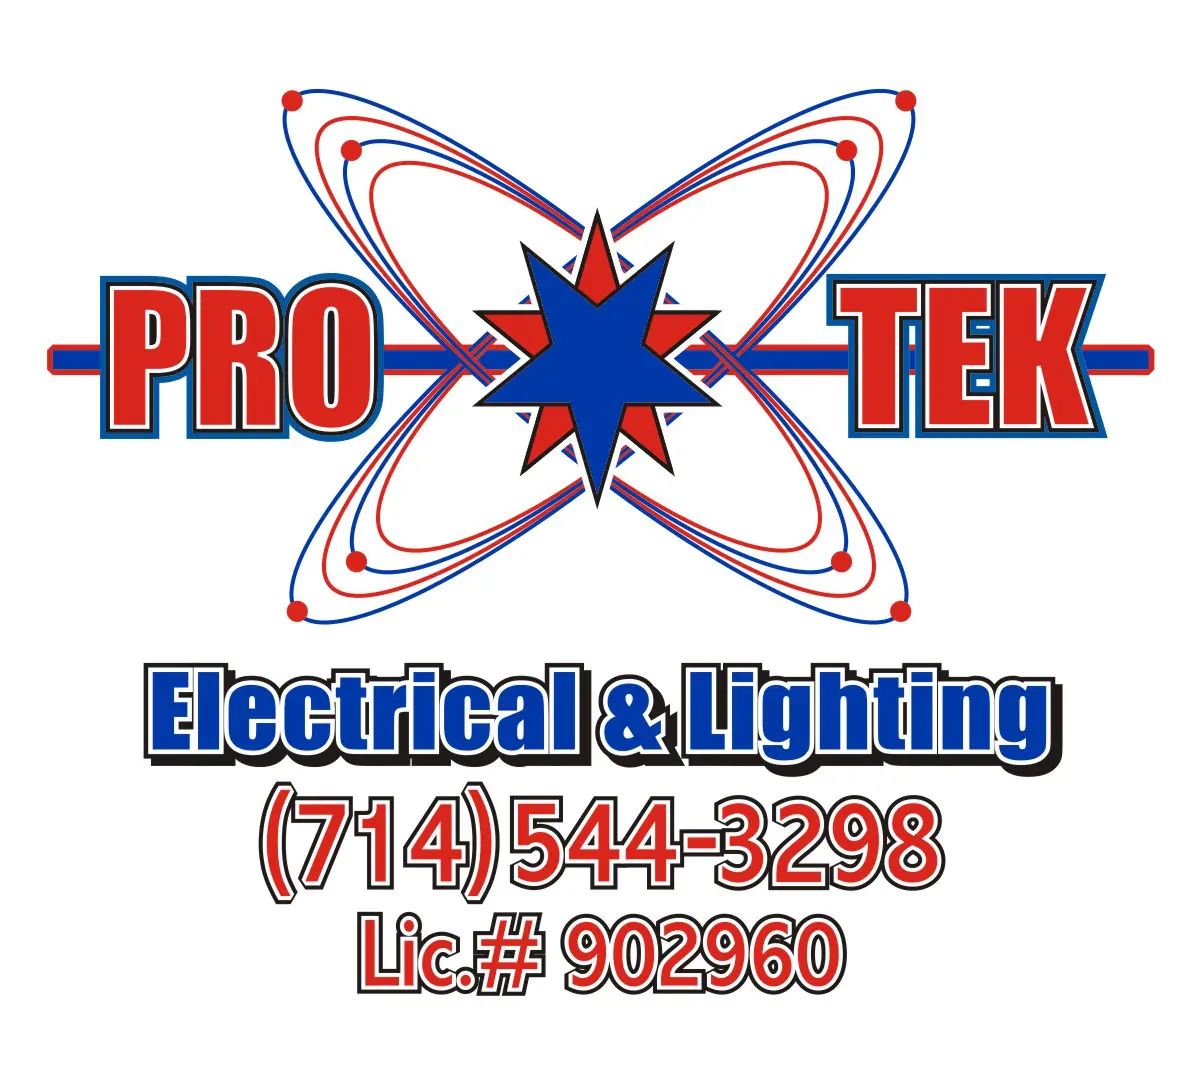 Pro Tek Electrical & Lighting